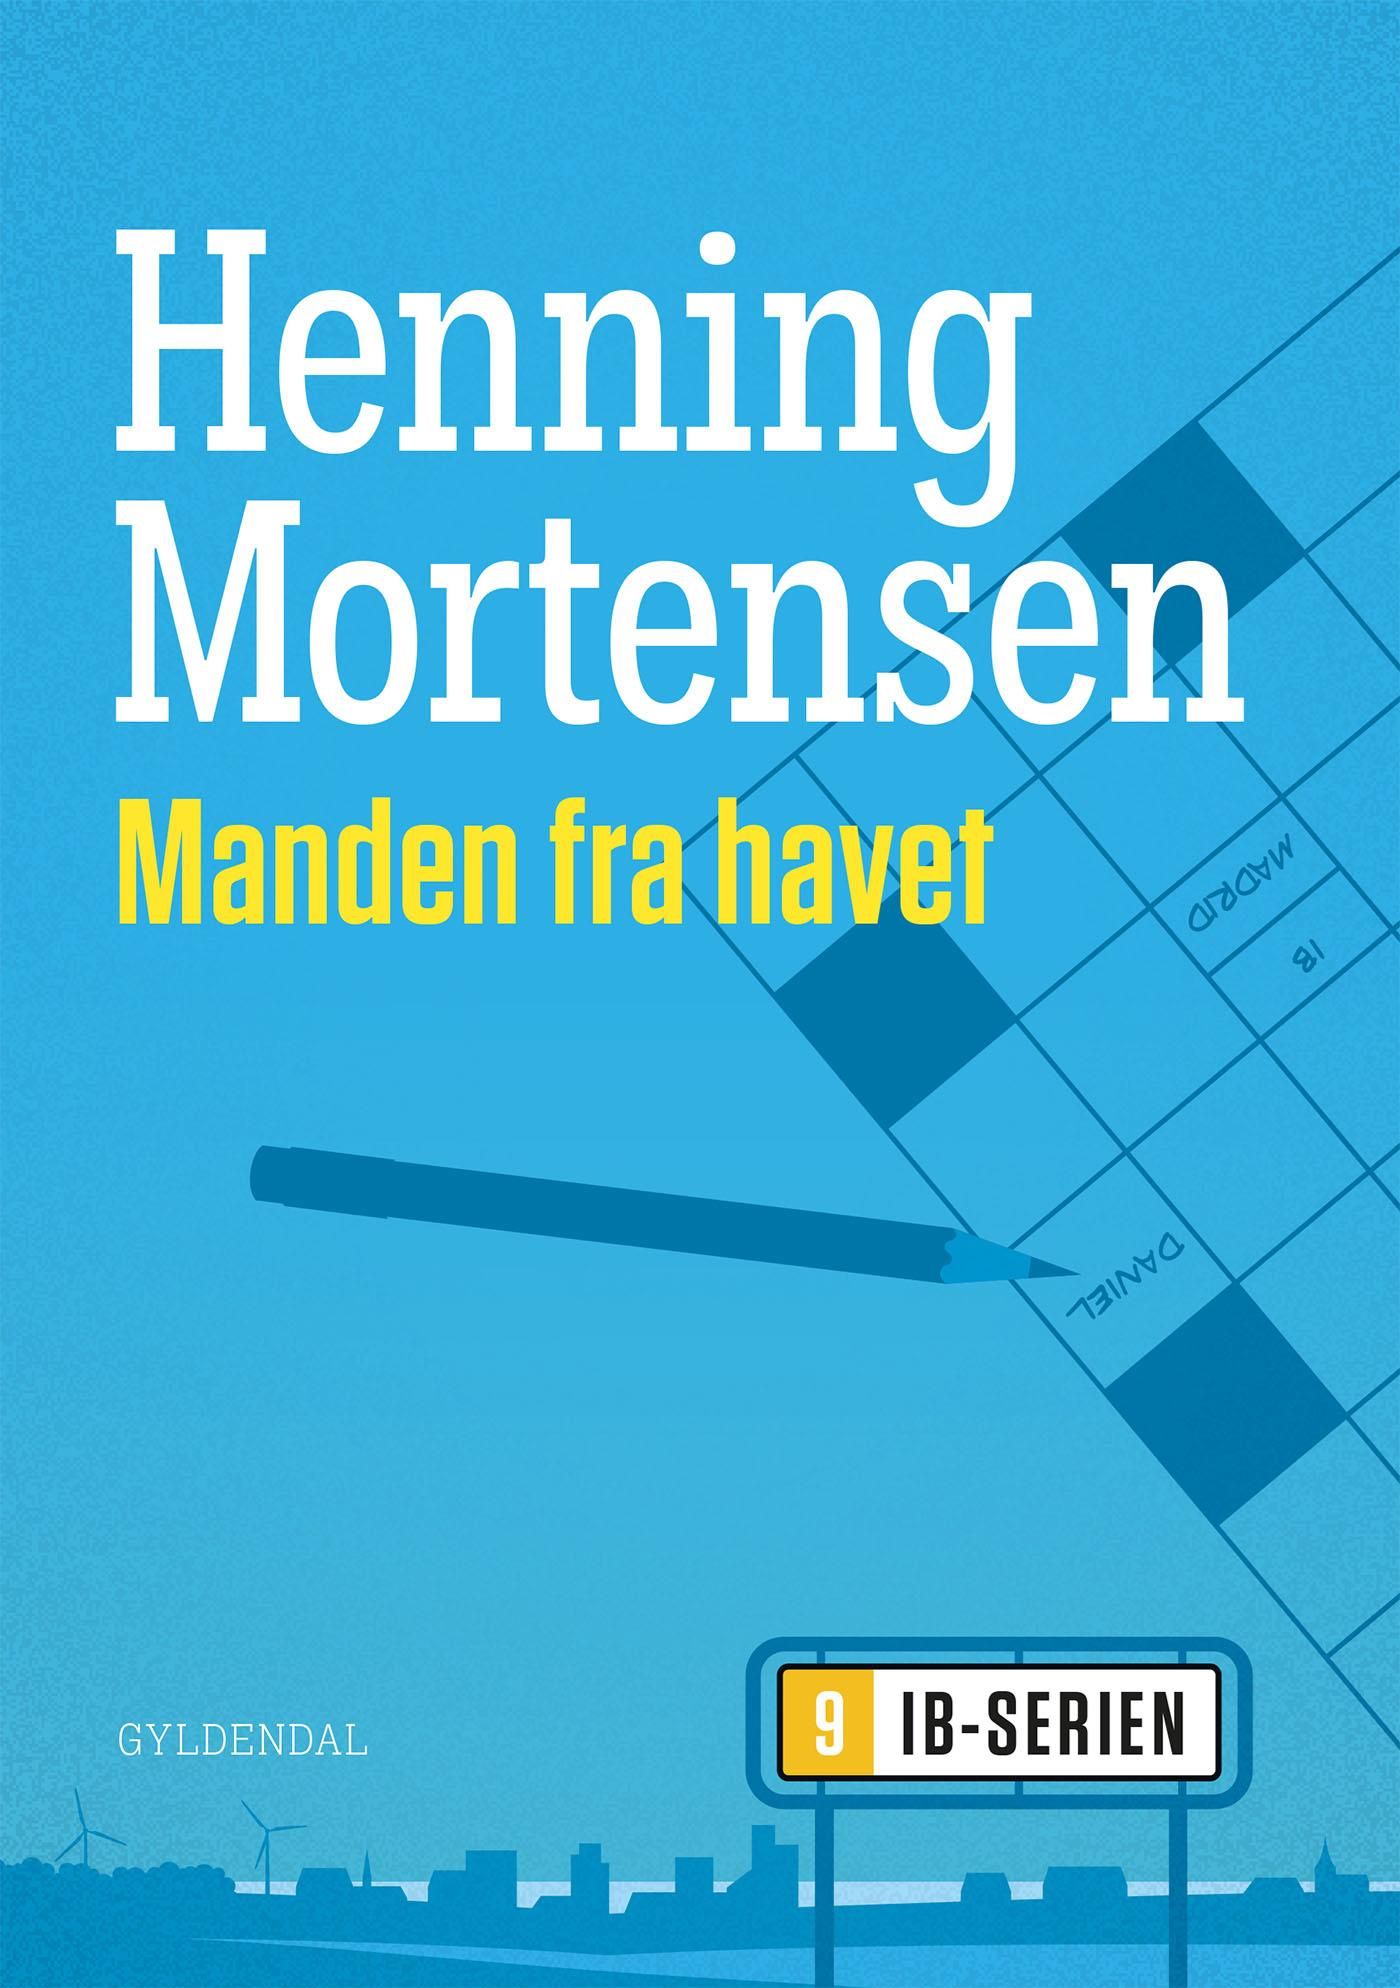 Manden fra havet, e-bok av Henning Mortensen